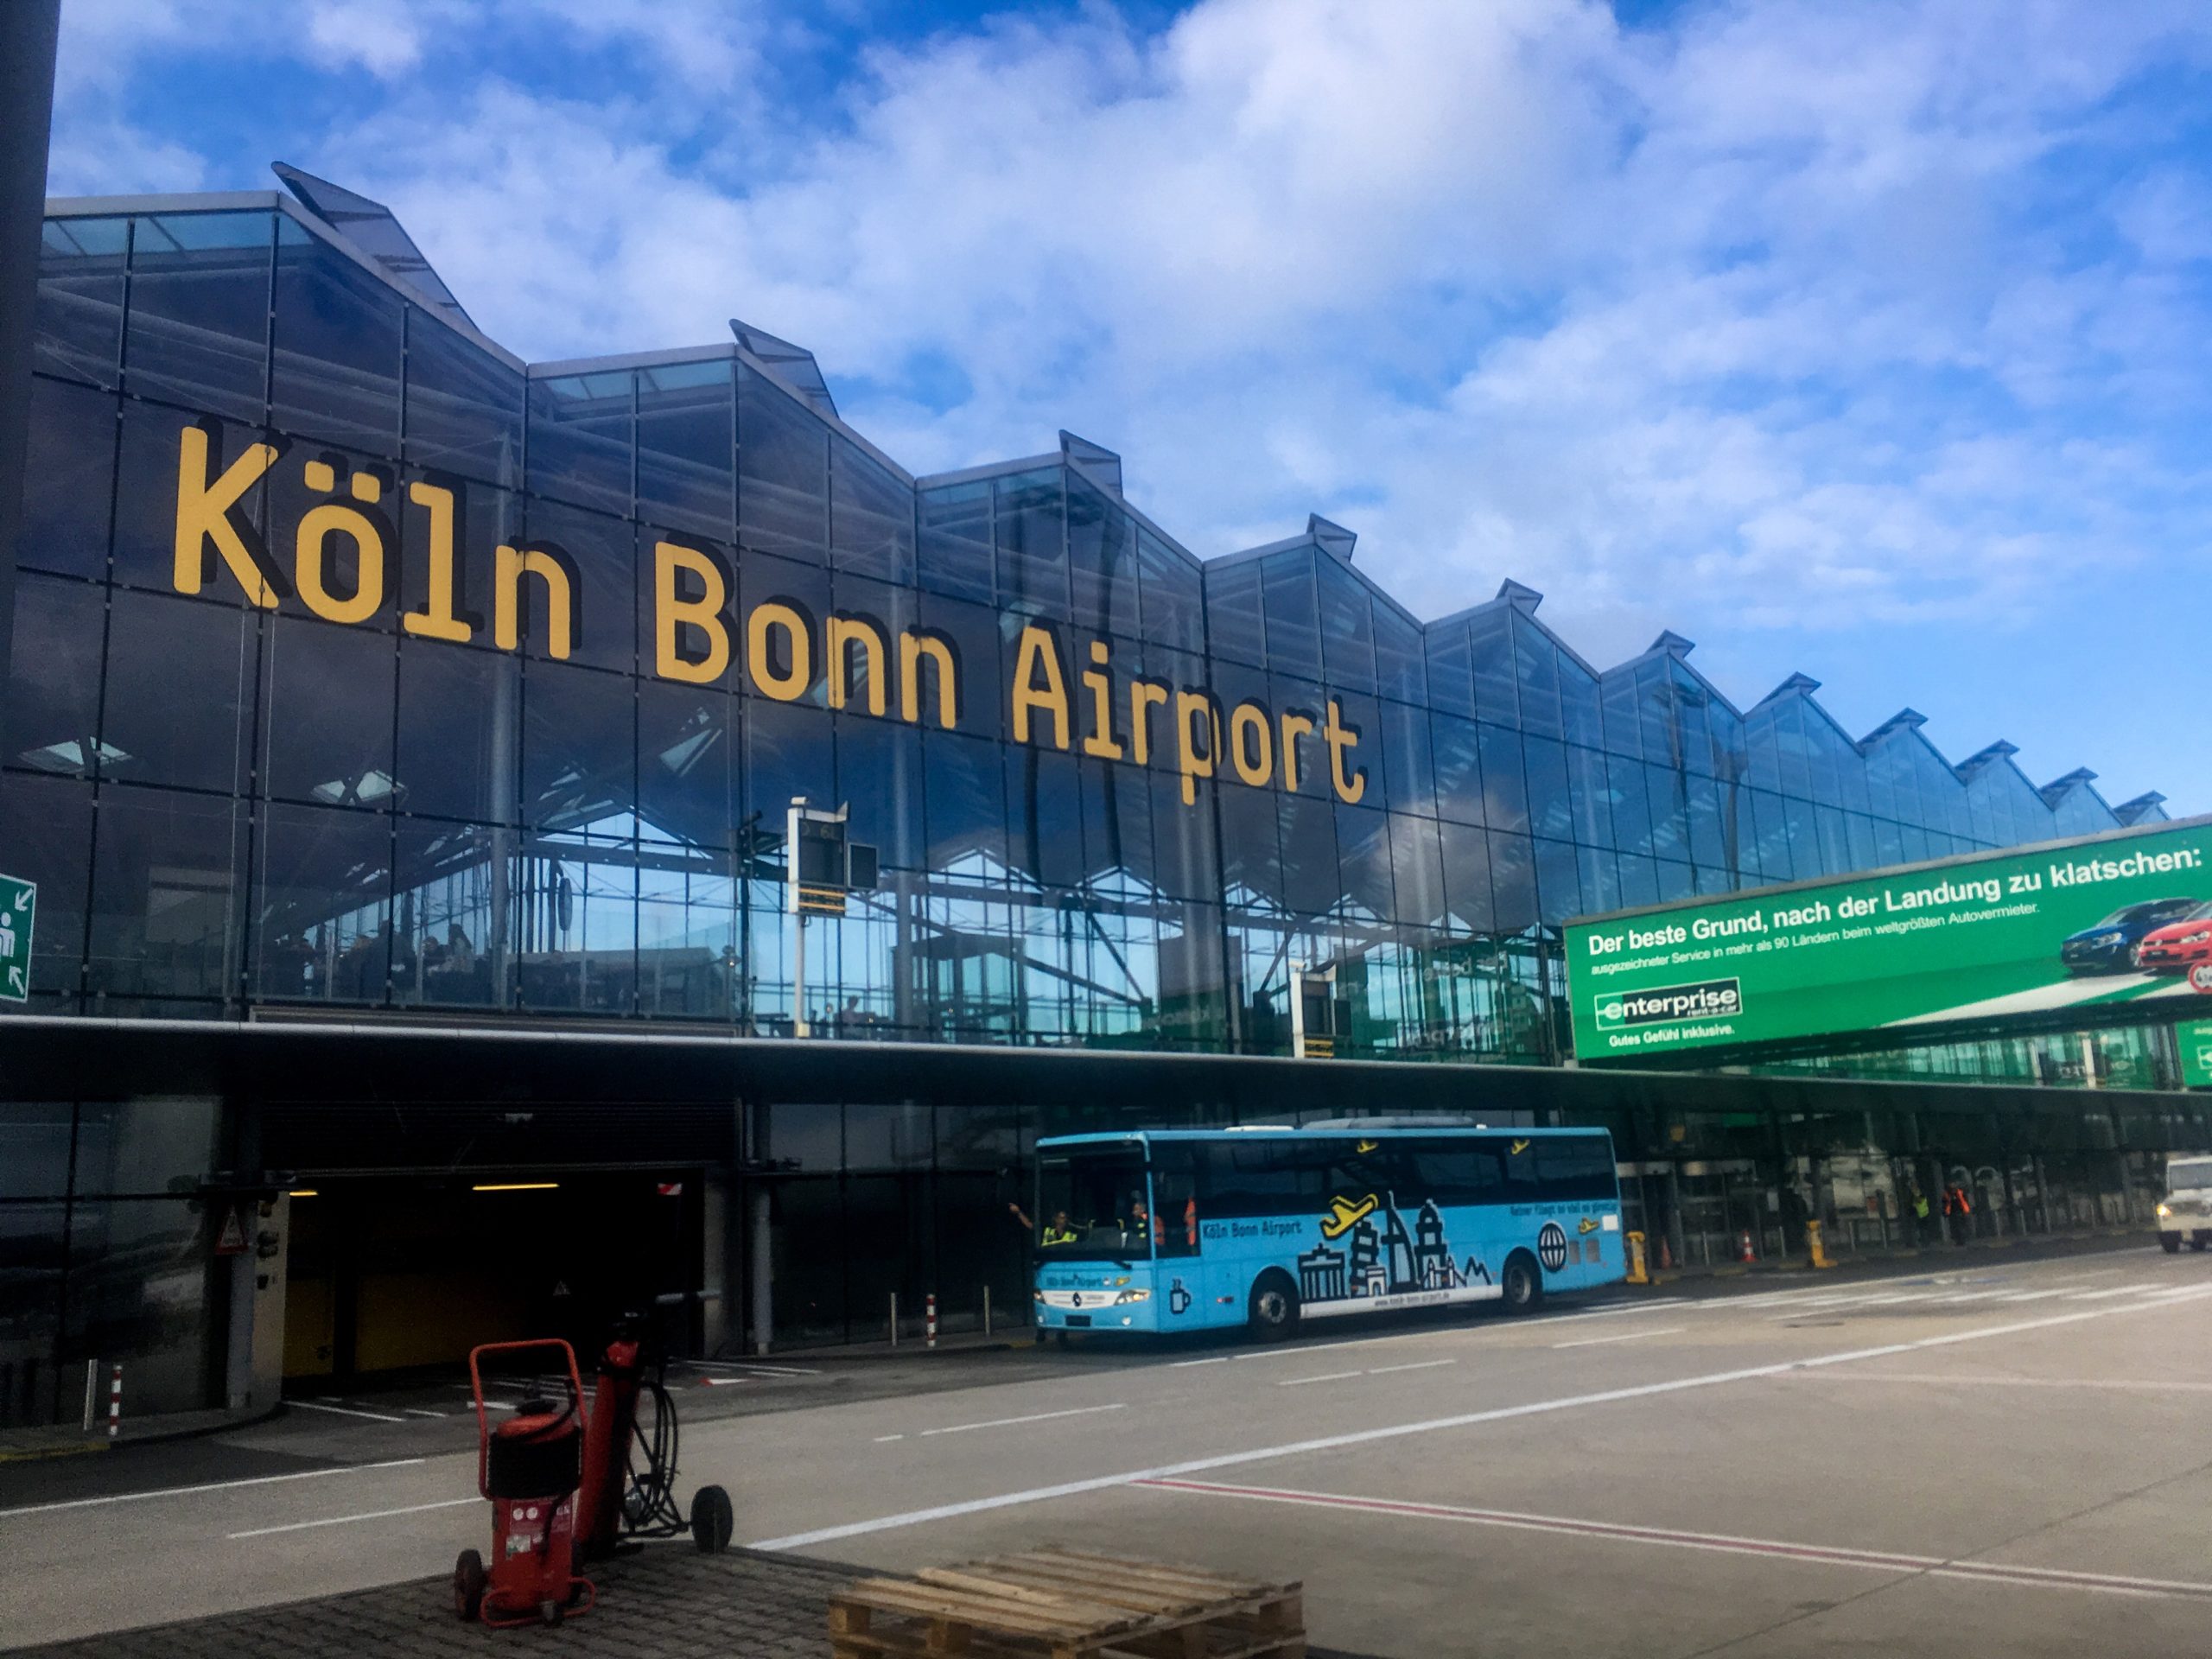 【ドイツ】ケルン中央駅からケルン・ボン空港への行き方を解説! 電車での移動がオススメ!